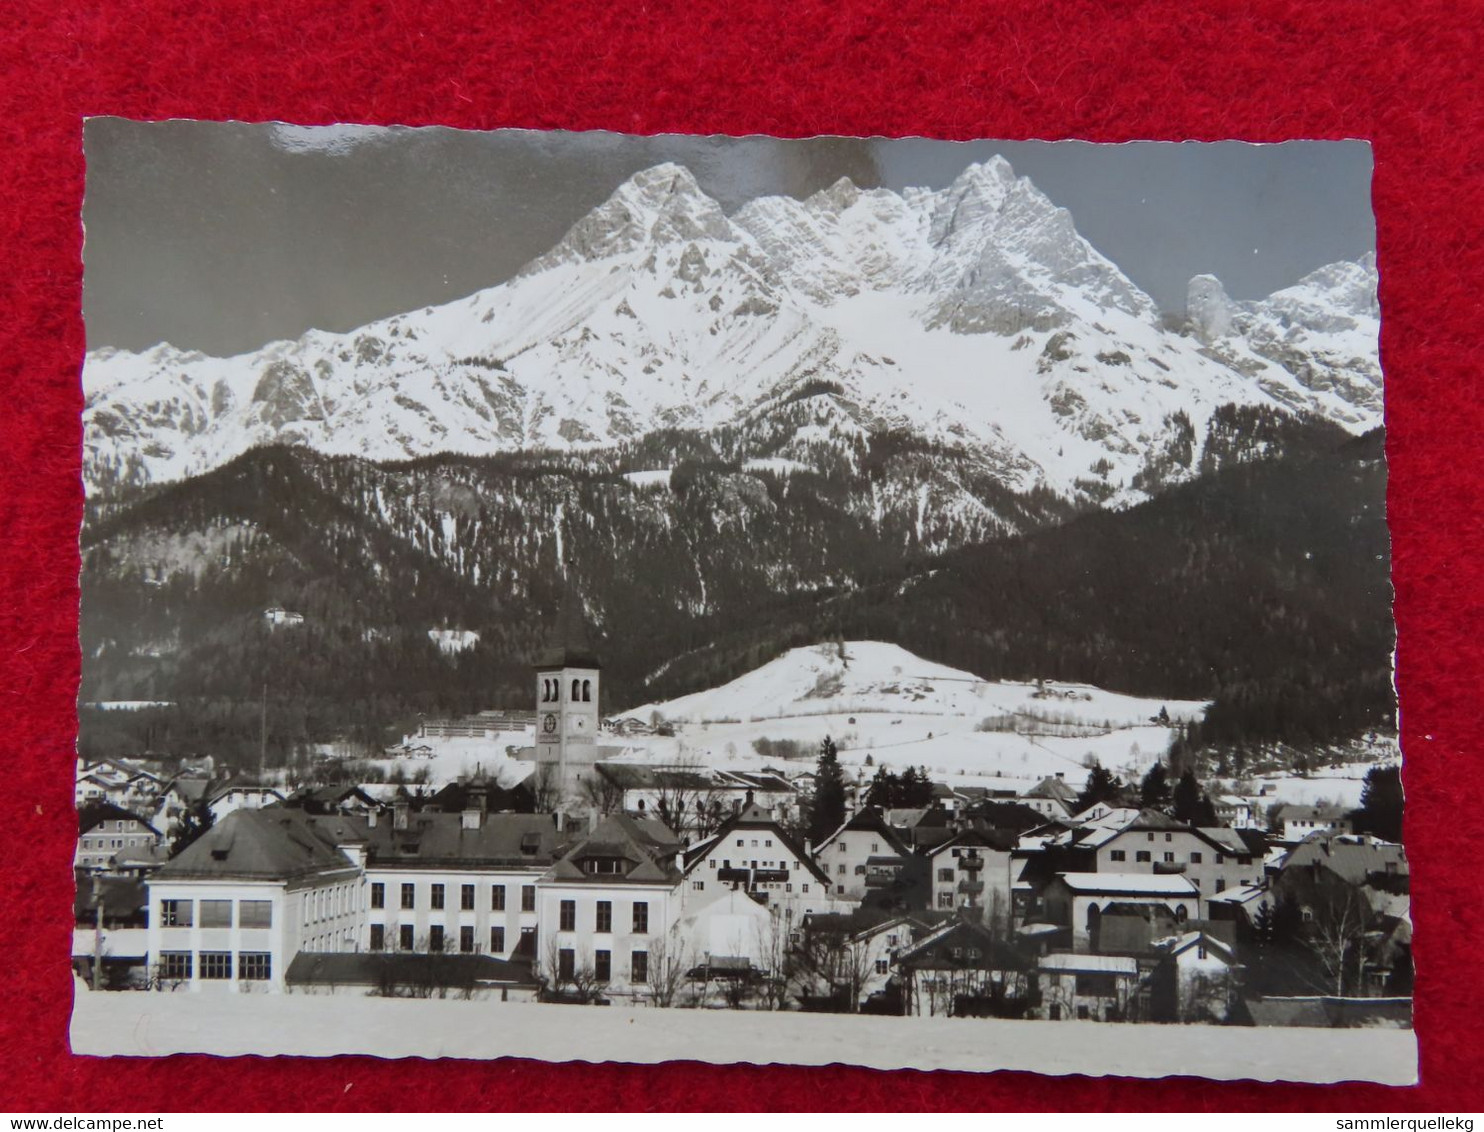 AK: Echtfoto - Saalfelden, Gelaufen 9. 3. 1964 (Nr. 3818) - Saalfelden